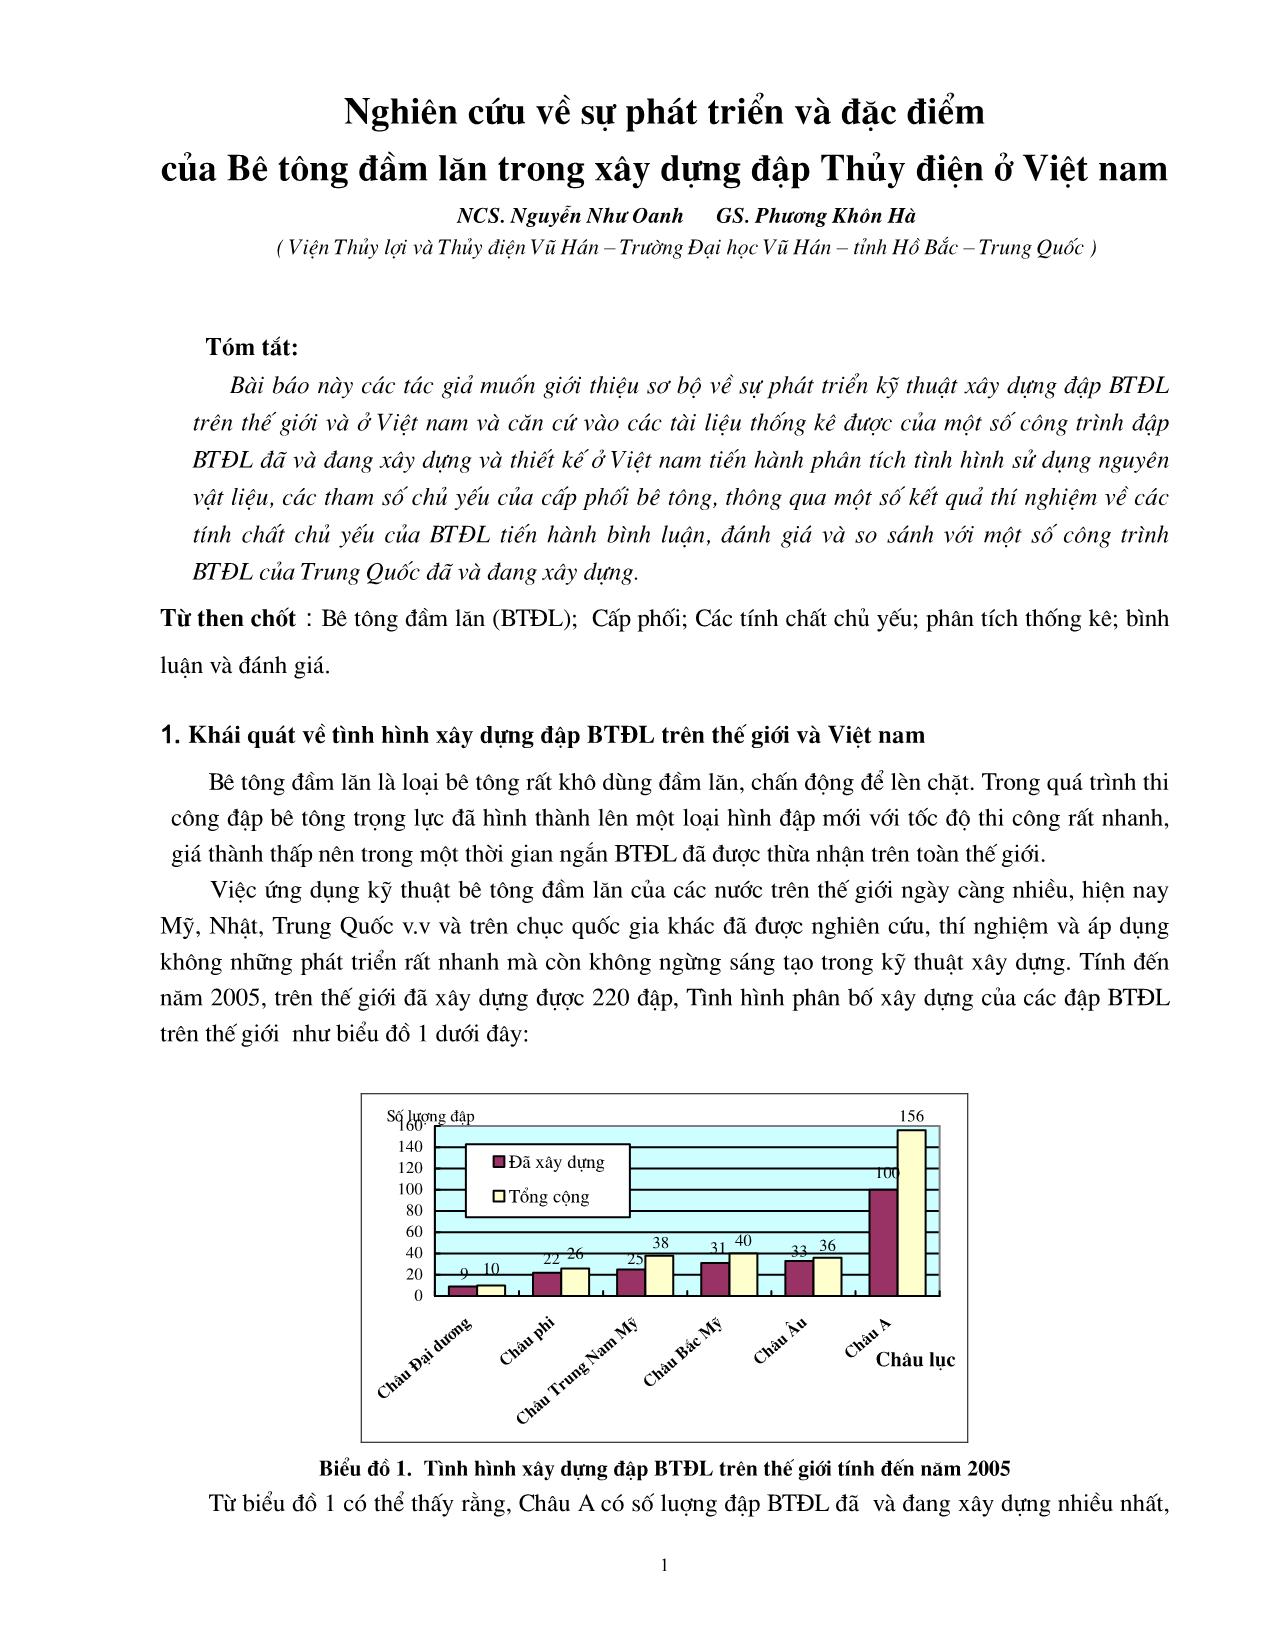 Nghiên cứu về sự phát triển và đặc điểm của bê tông đầm lăn trong xây dựng đập thủy điện ở Việt nam trang 1